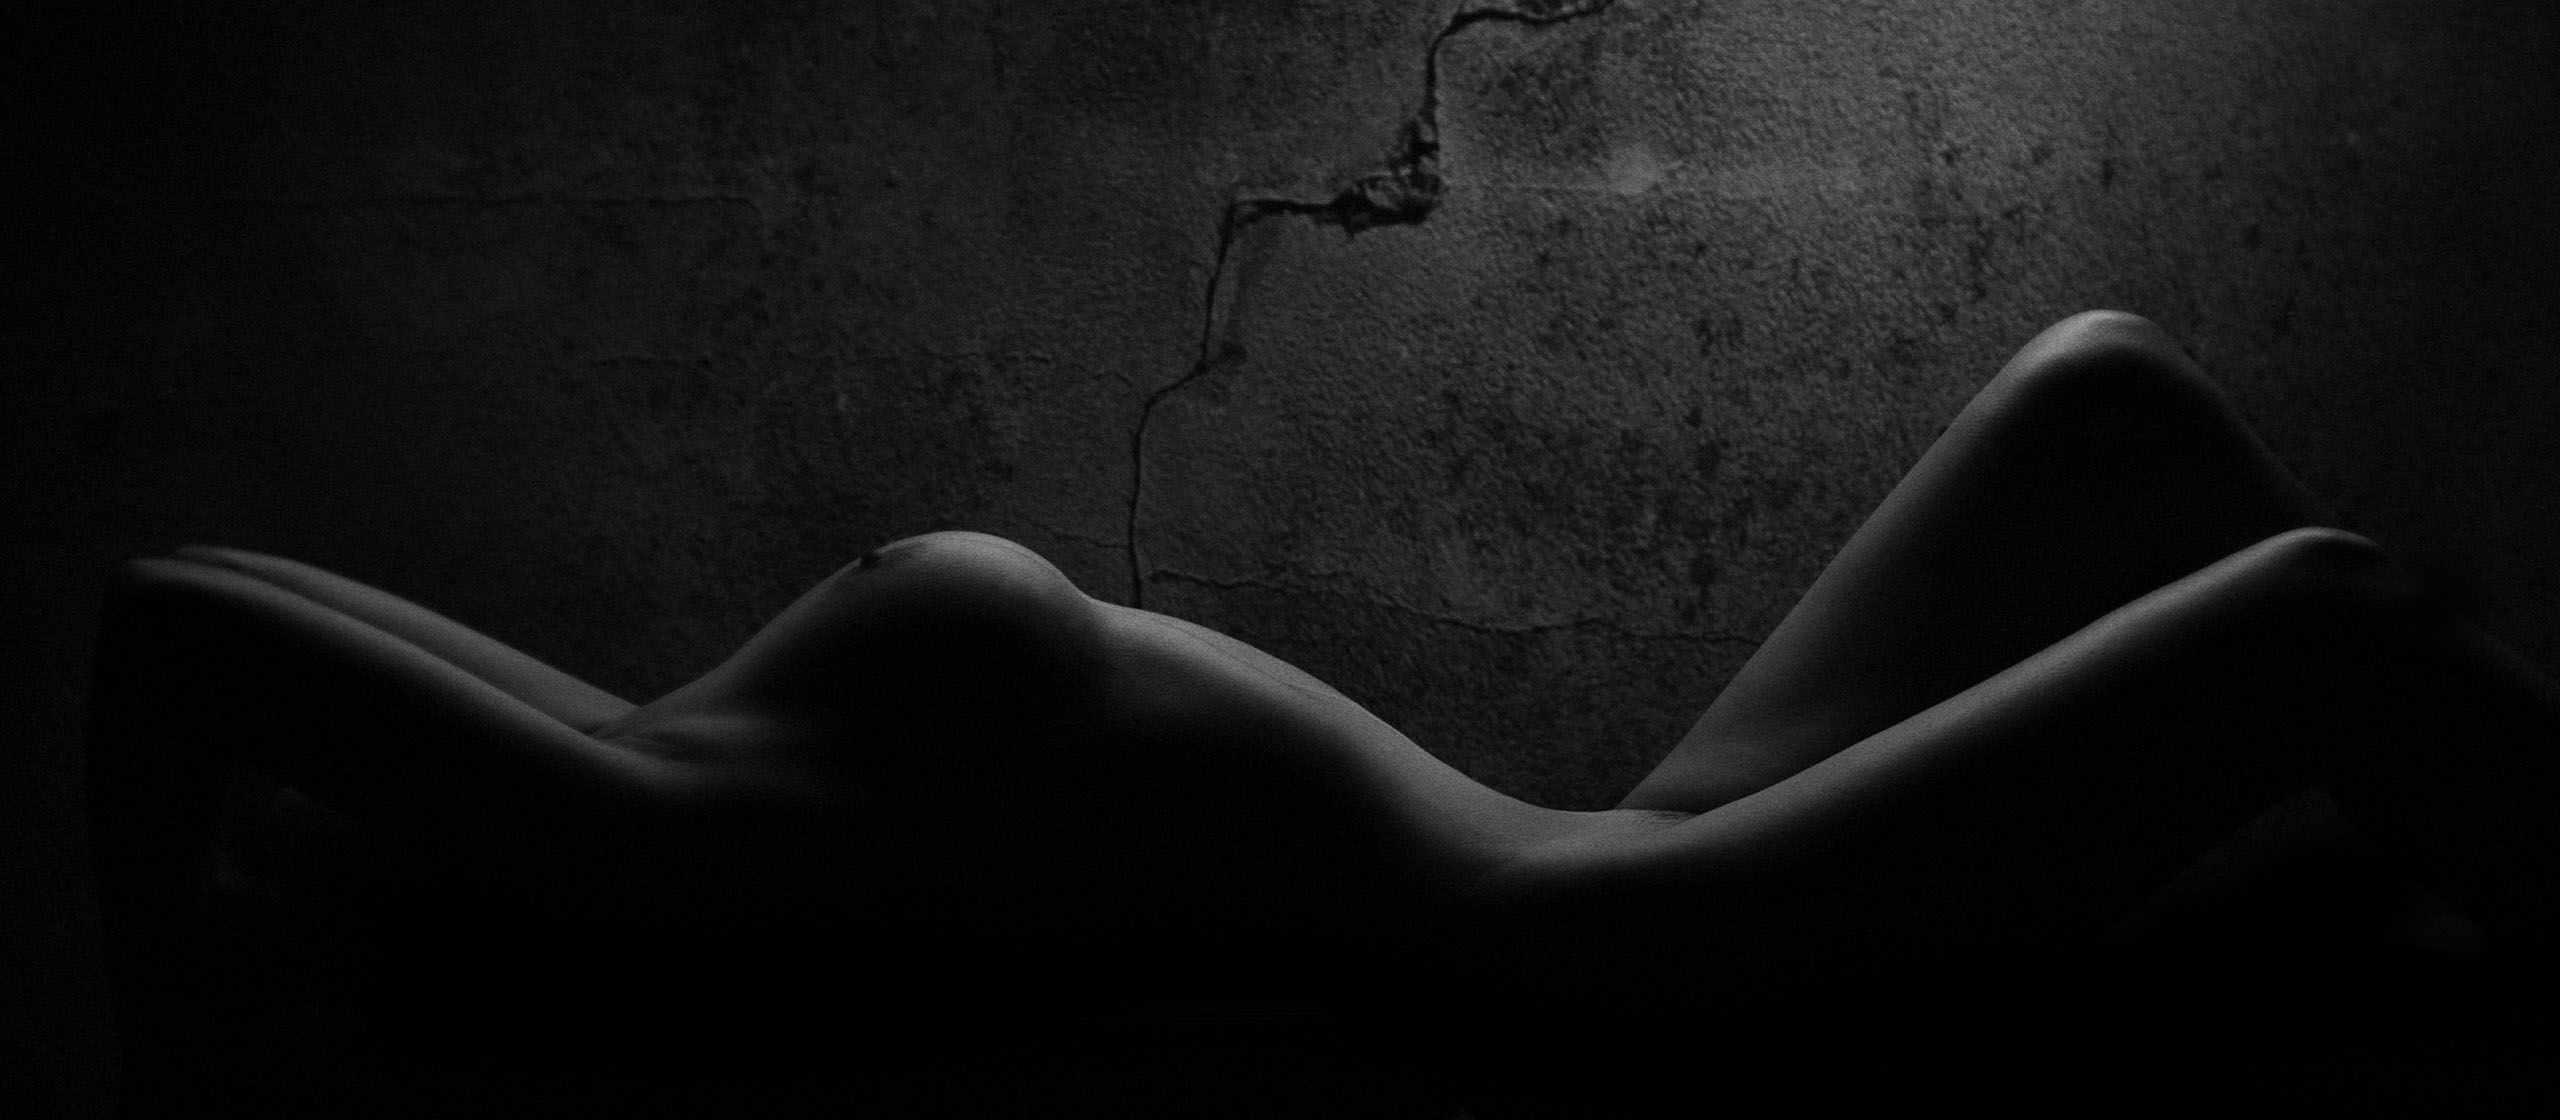 Nackte Frau in einem dunklen, hellen Raum, Brüste im Licht hervorgehoben